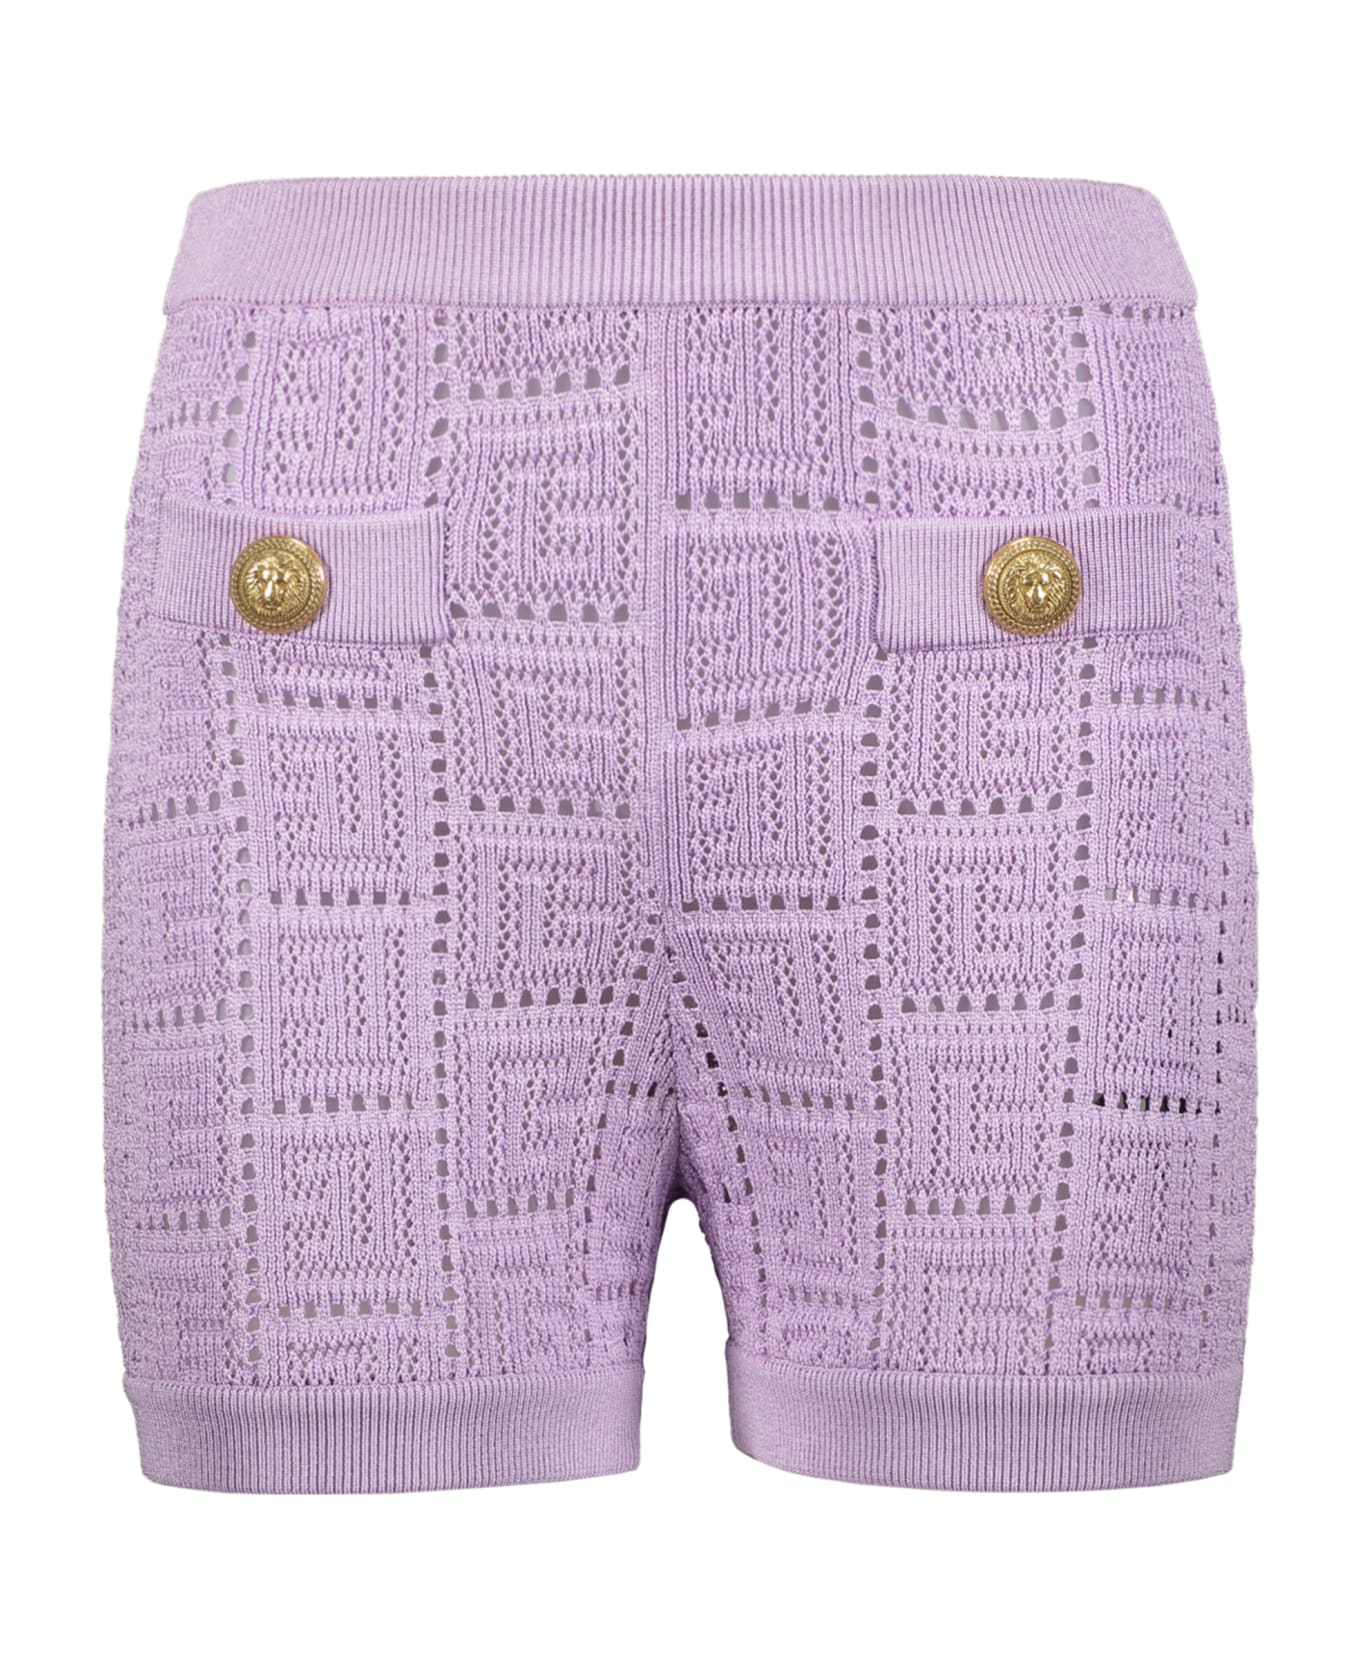 Balmain Knitted Shorts - Lilac